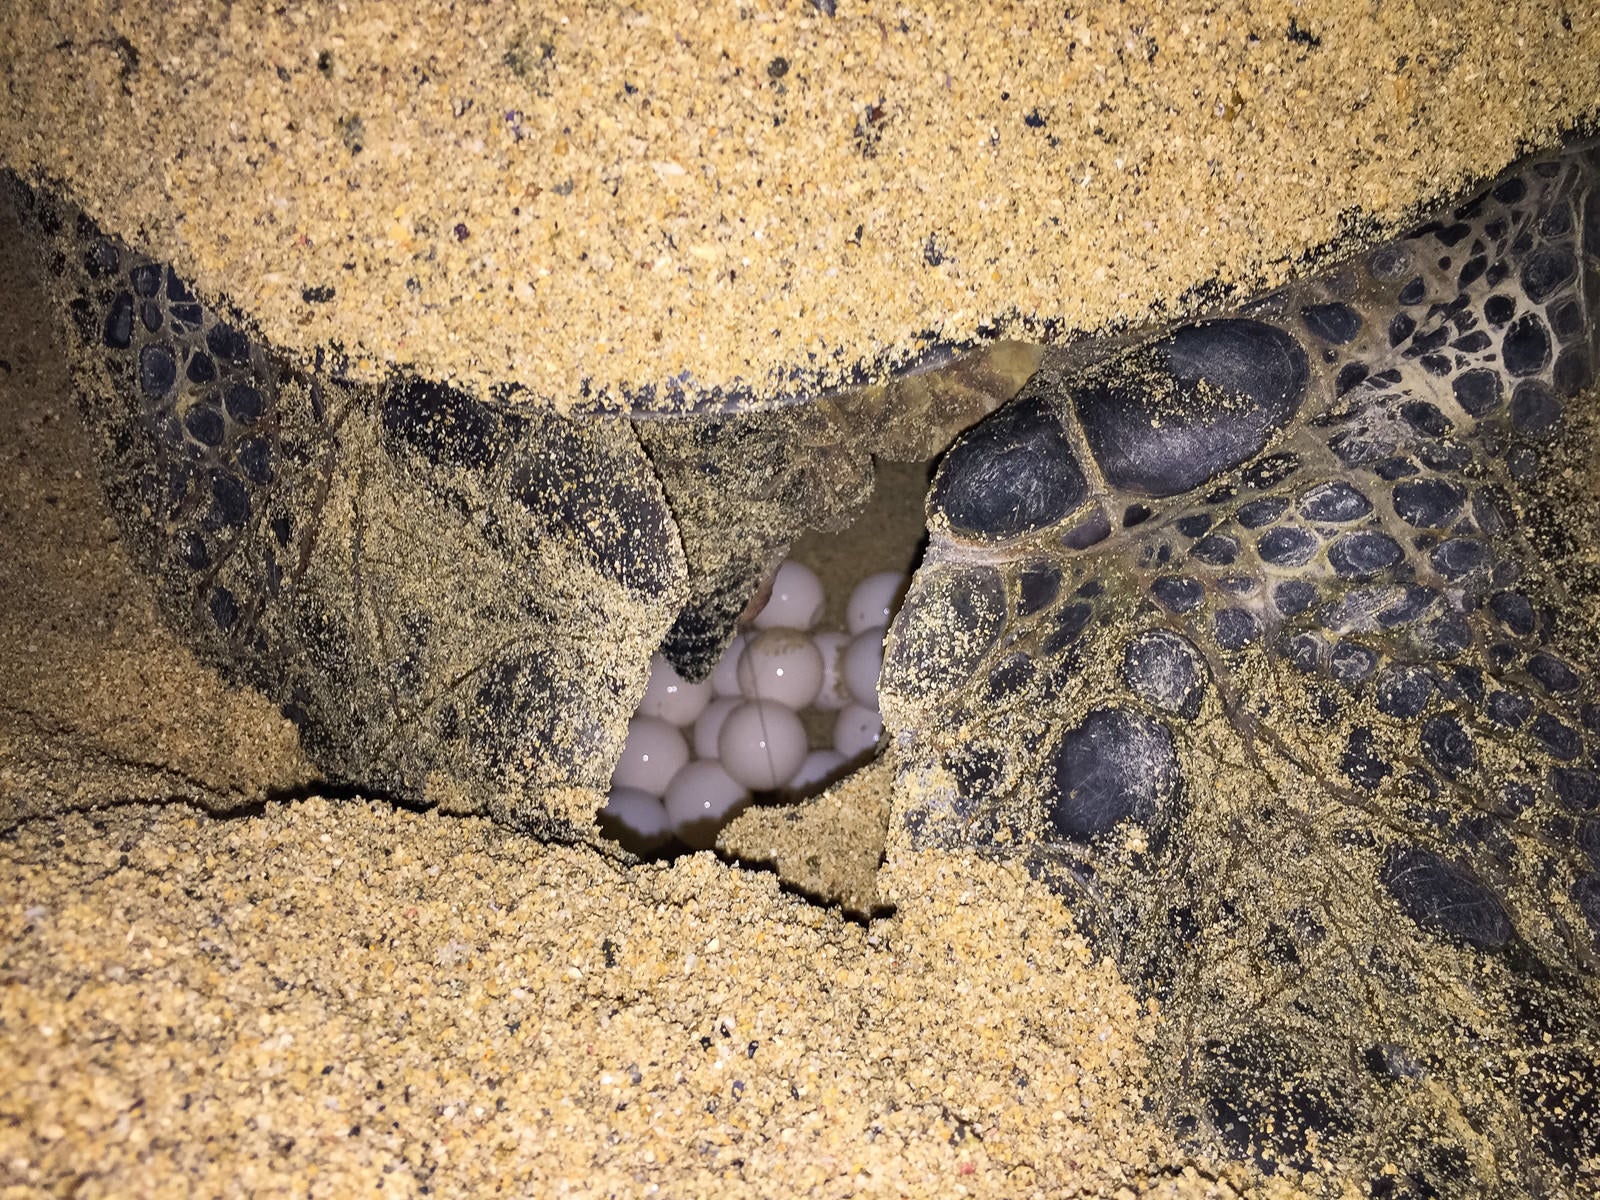 「砂浜に卵を生むウミガメの様子」の写真